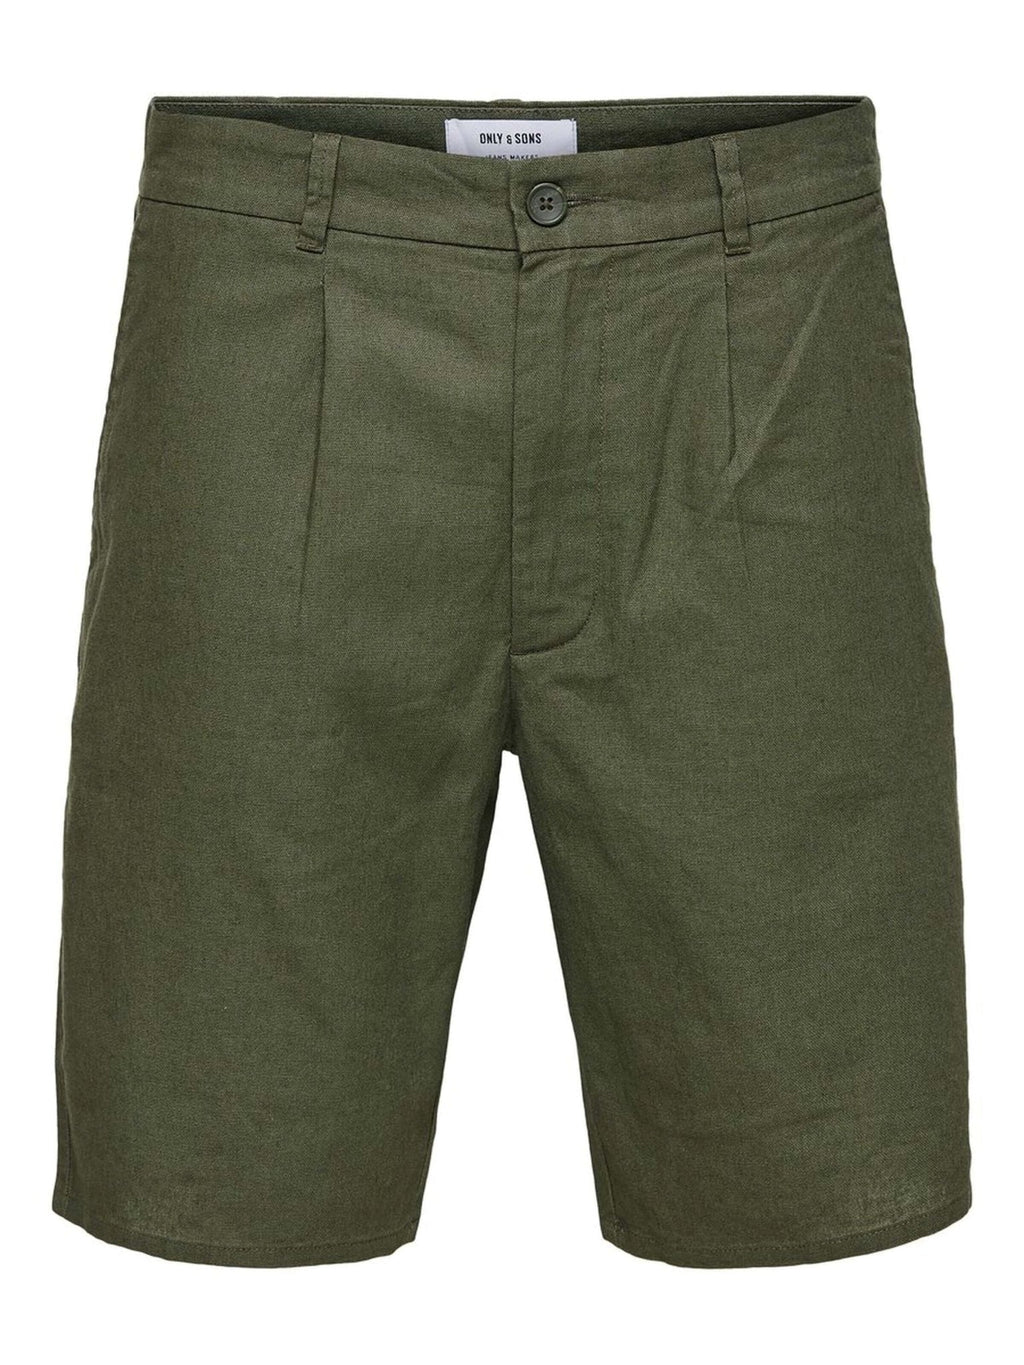 Čujte kratke hlače - maslinasto zelena